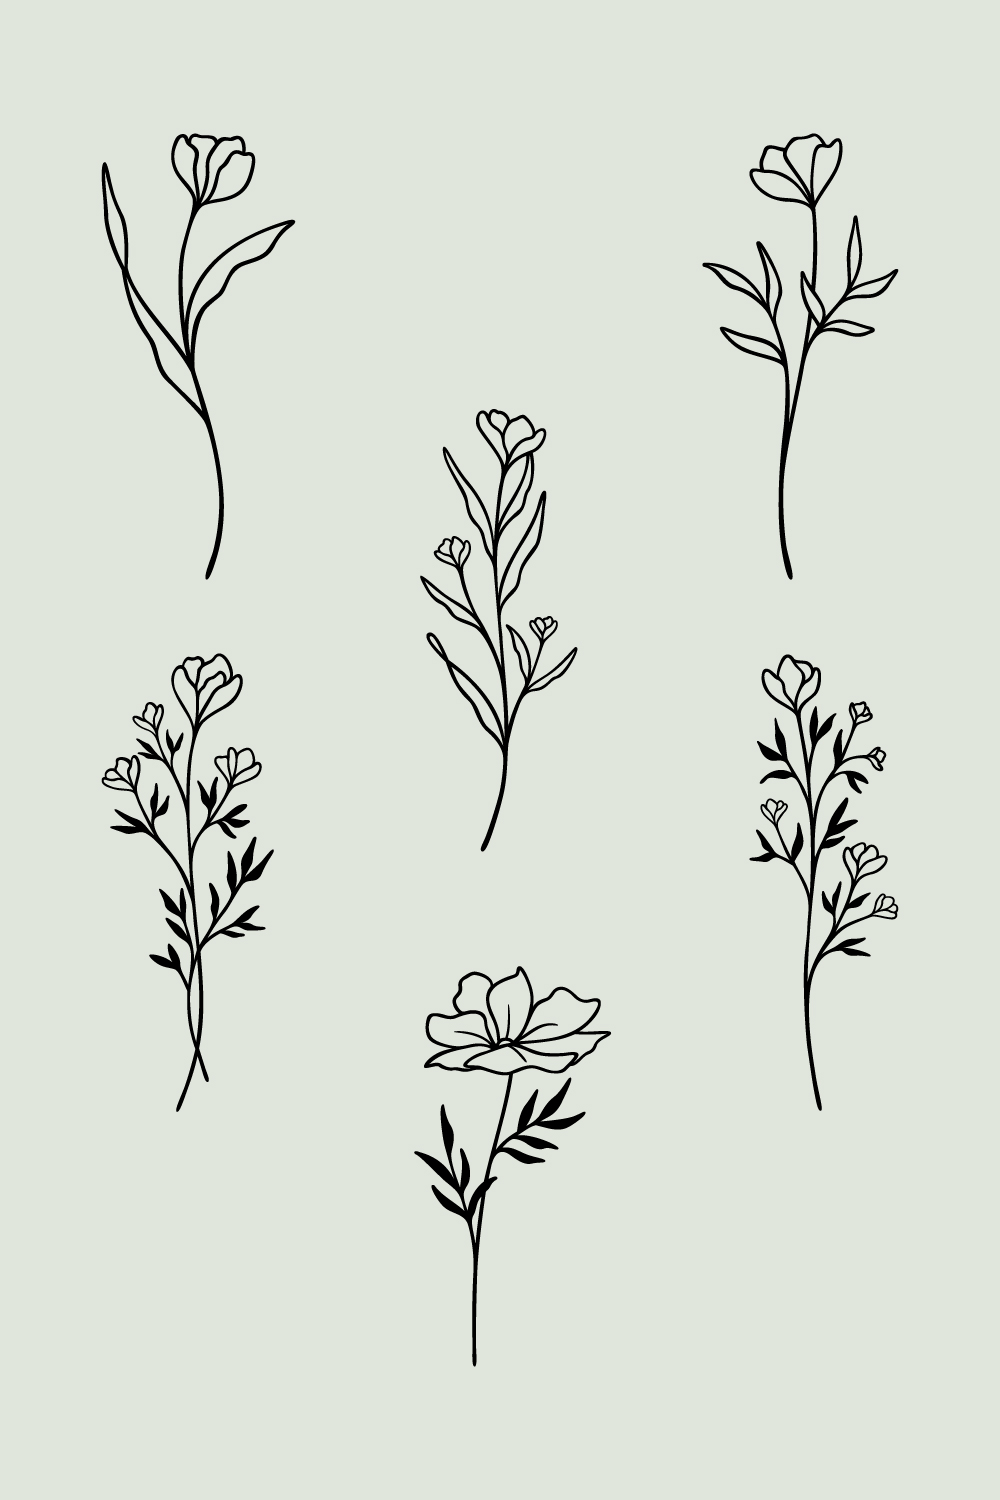 Flower Line Art Bundle | 6 Elegant Wildflowers | Botanical Floral Vector Illustration Set | Leafy Garden Plant Designs pinterest preview image.